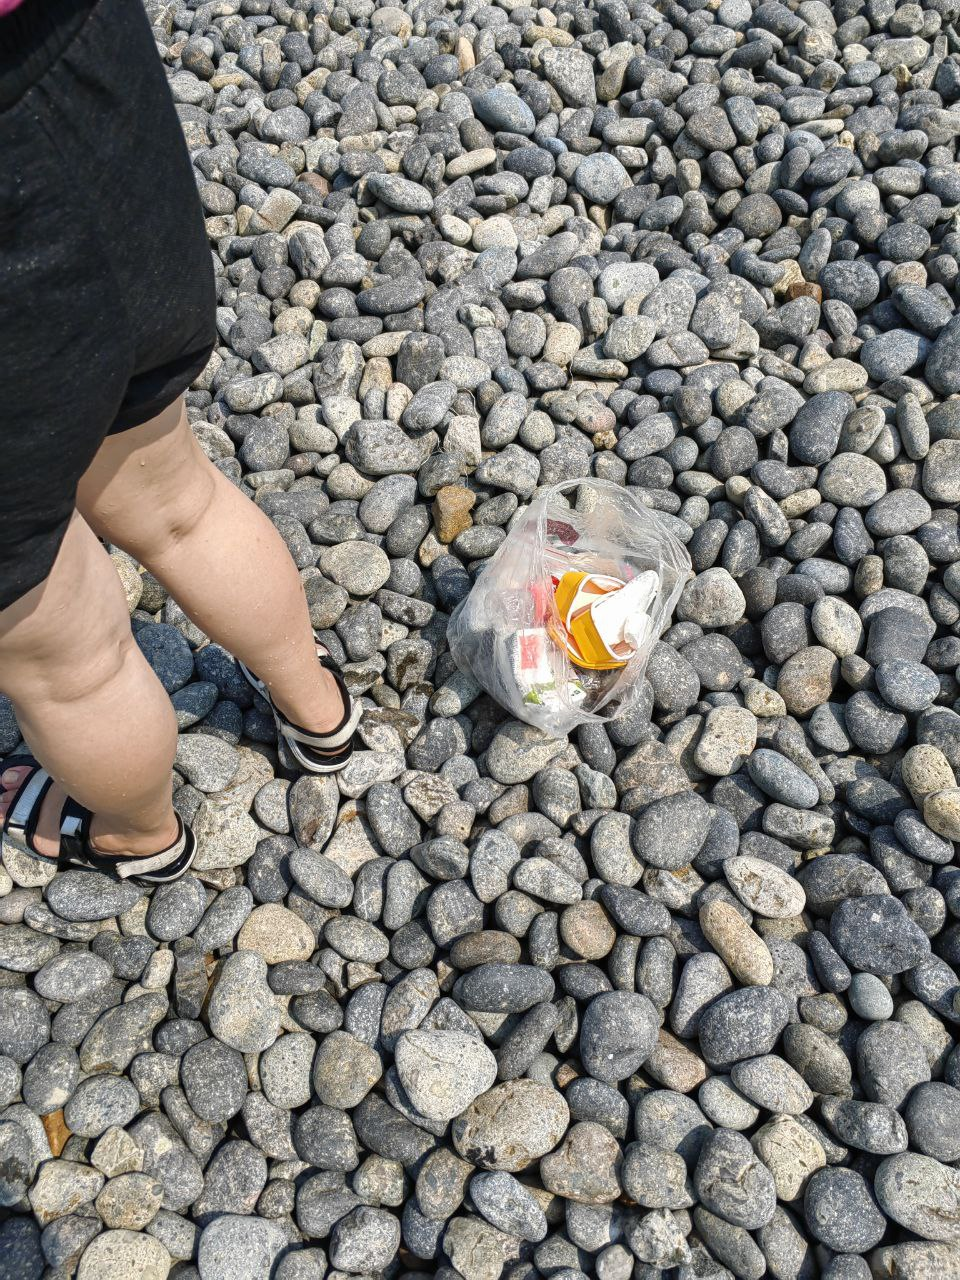 在海滩上随便捡的垃圾。很碍眼，大家要爱护大海呀。